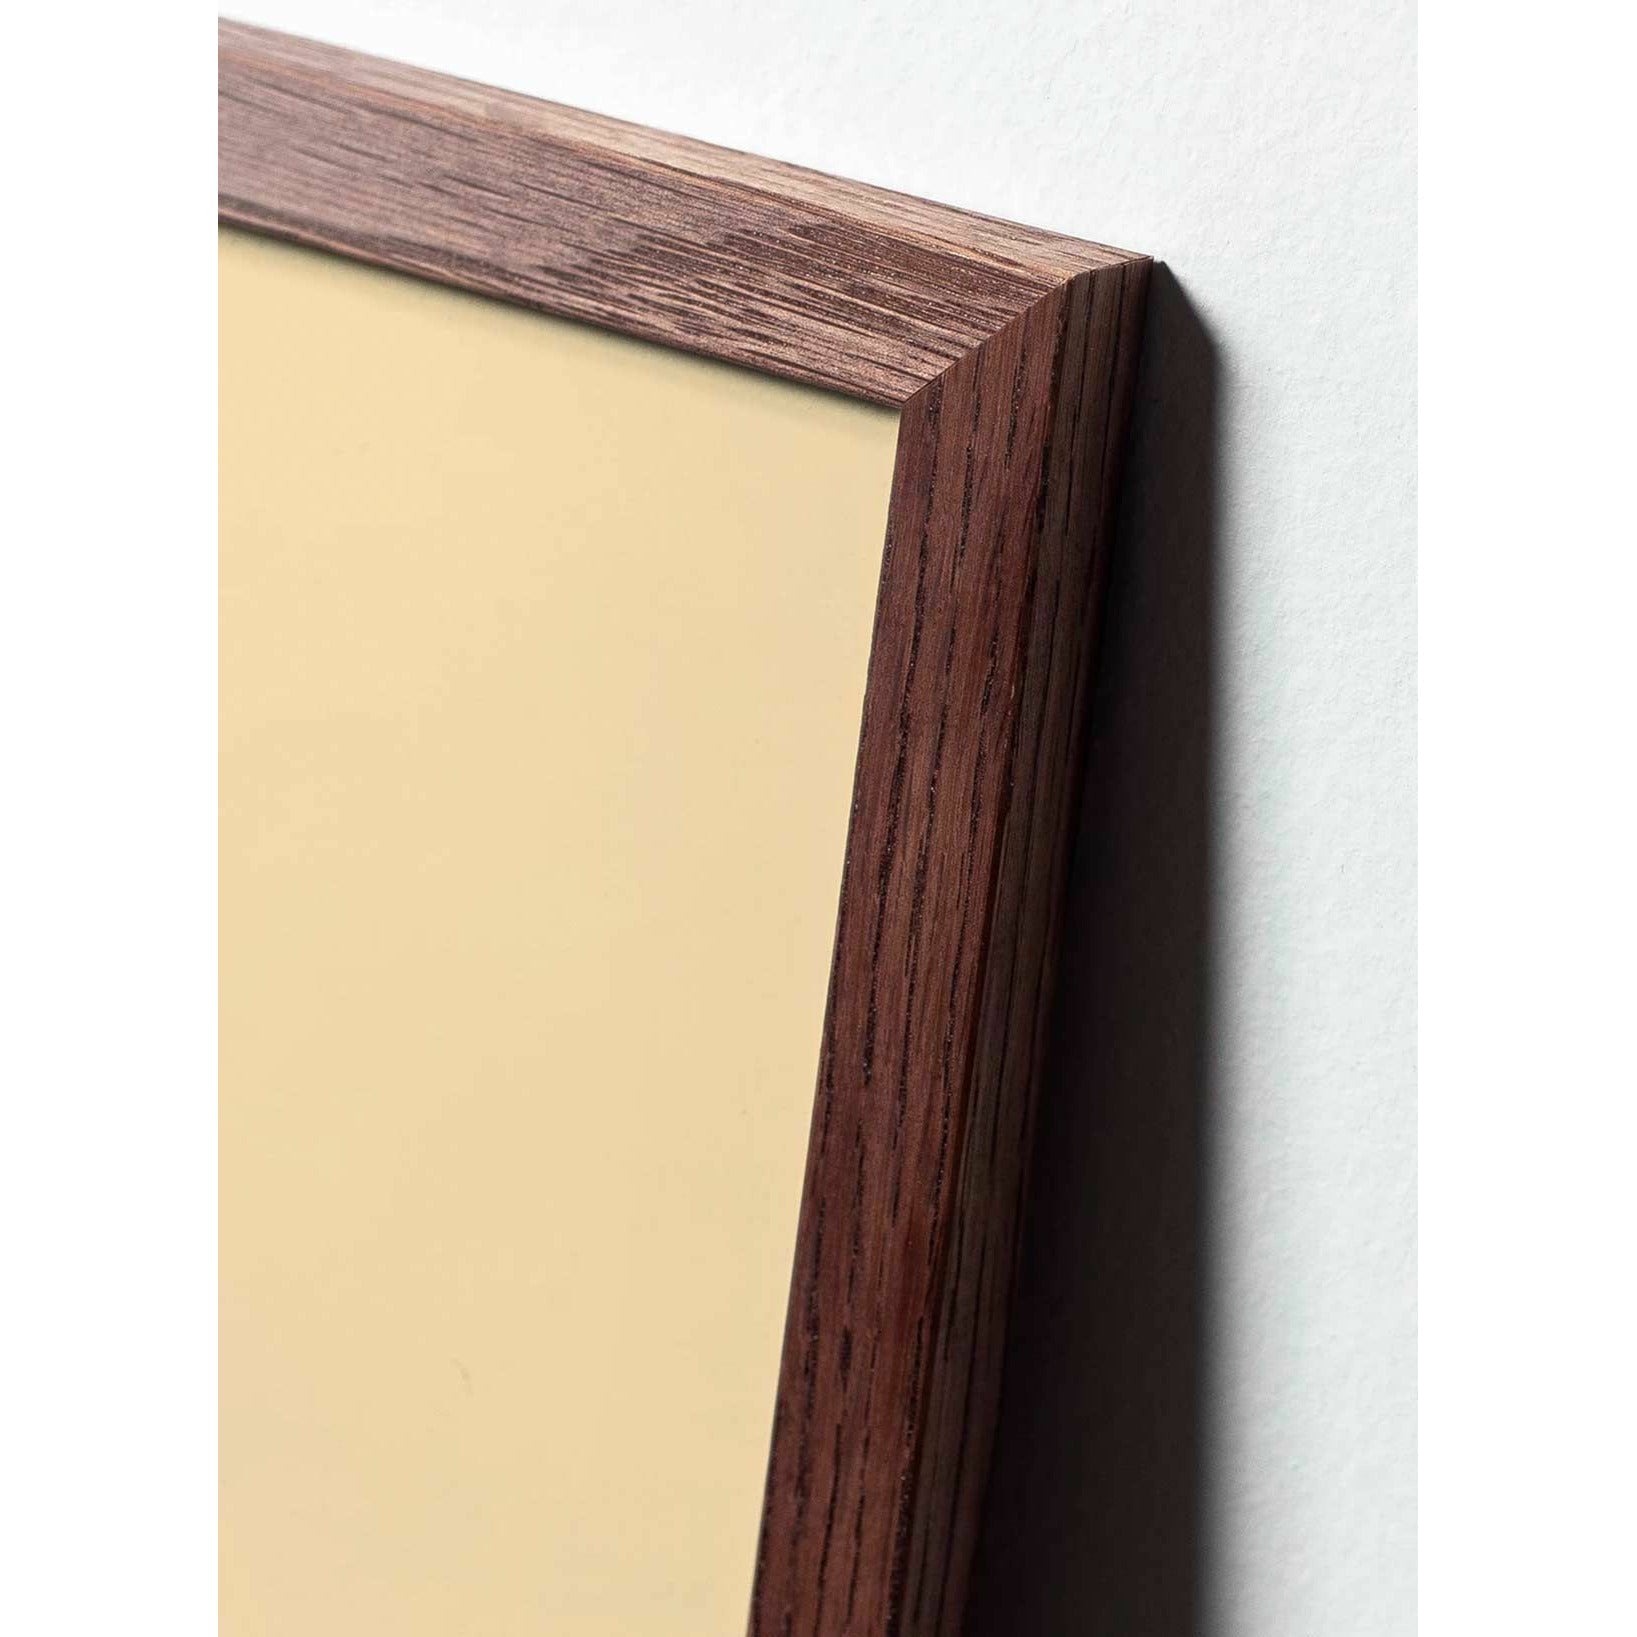 Póster clásico de cono de pino de creación, marco de madera oscura A5, fondo rojo